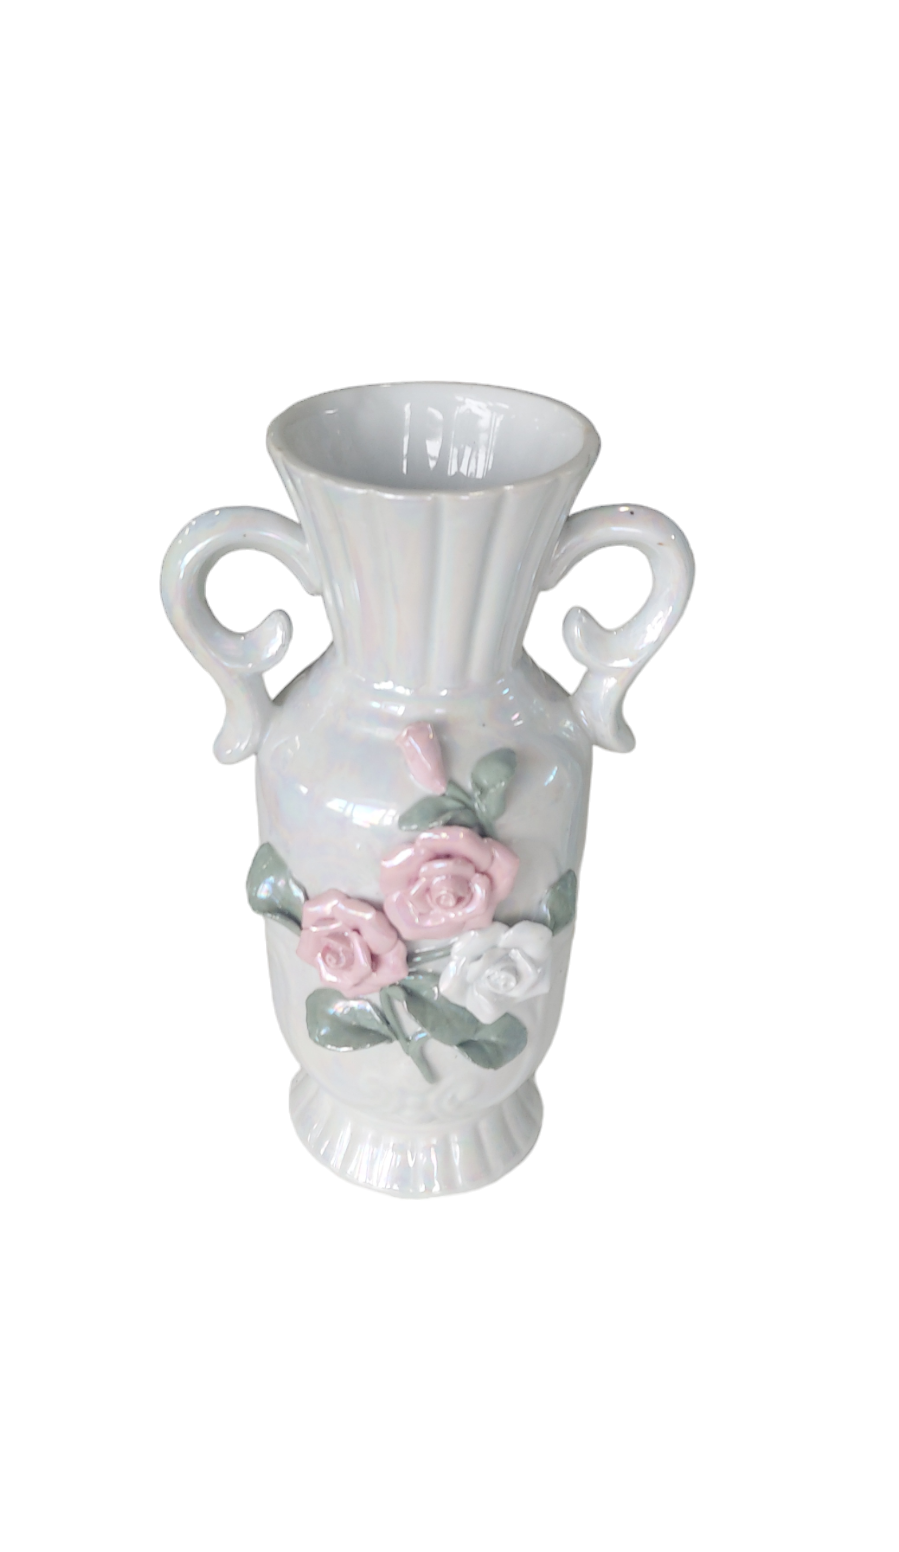 Iridiscent Vase